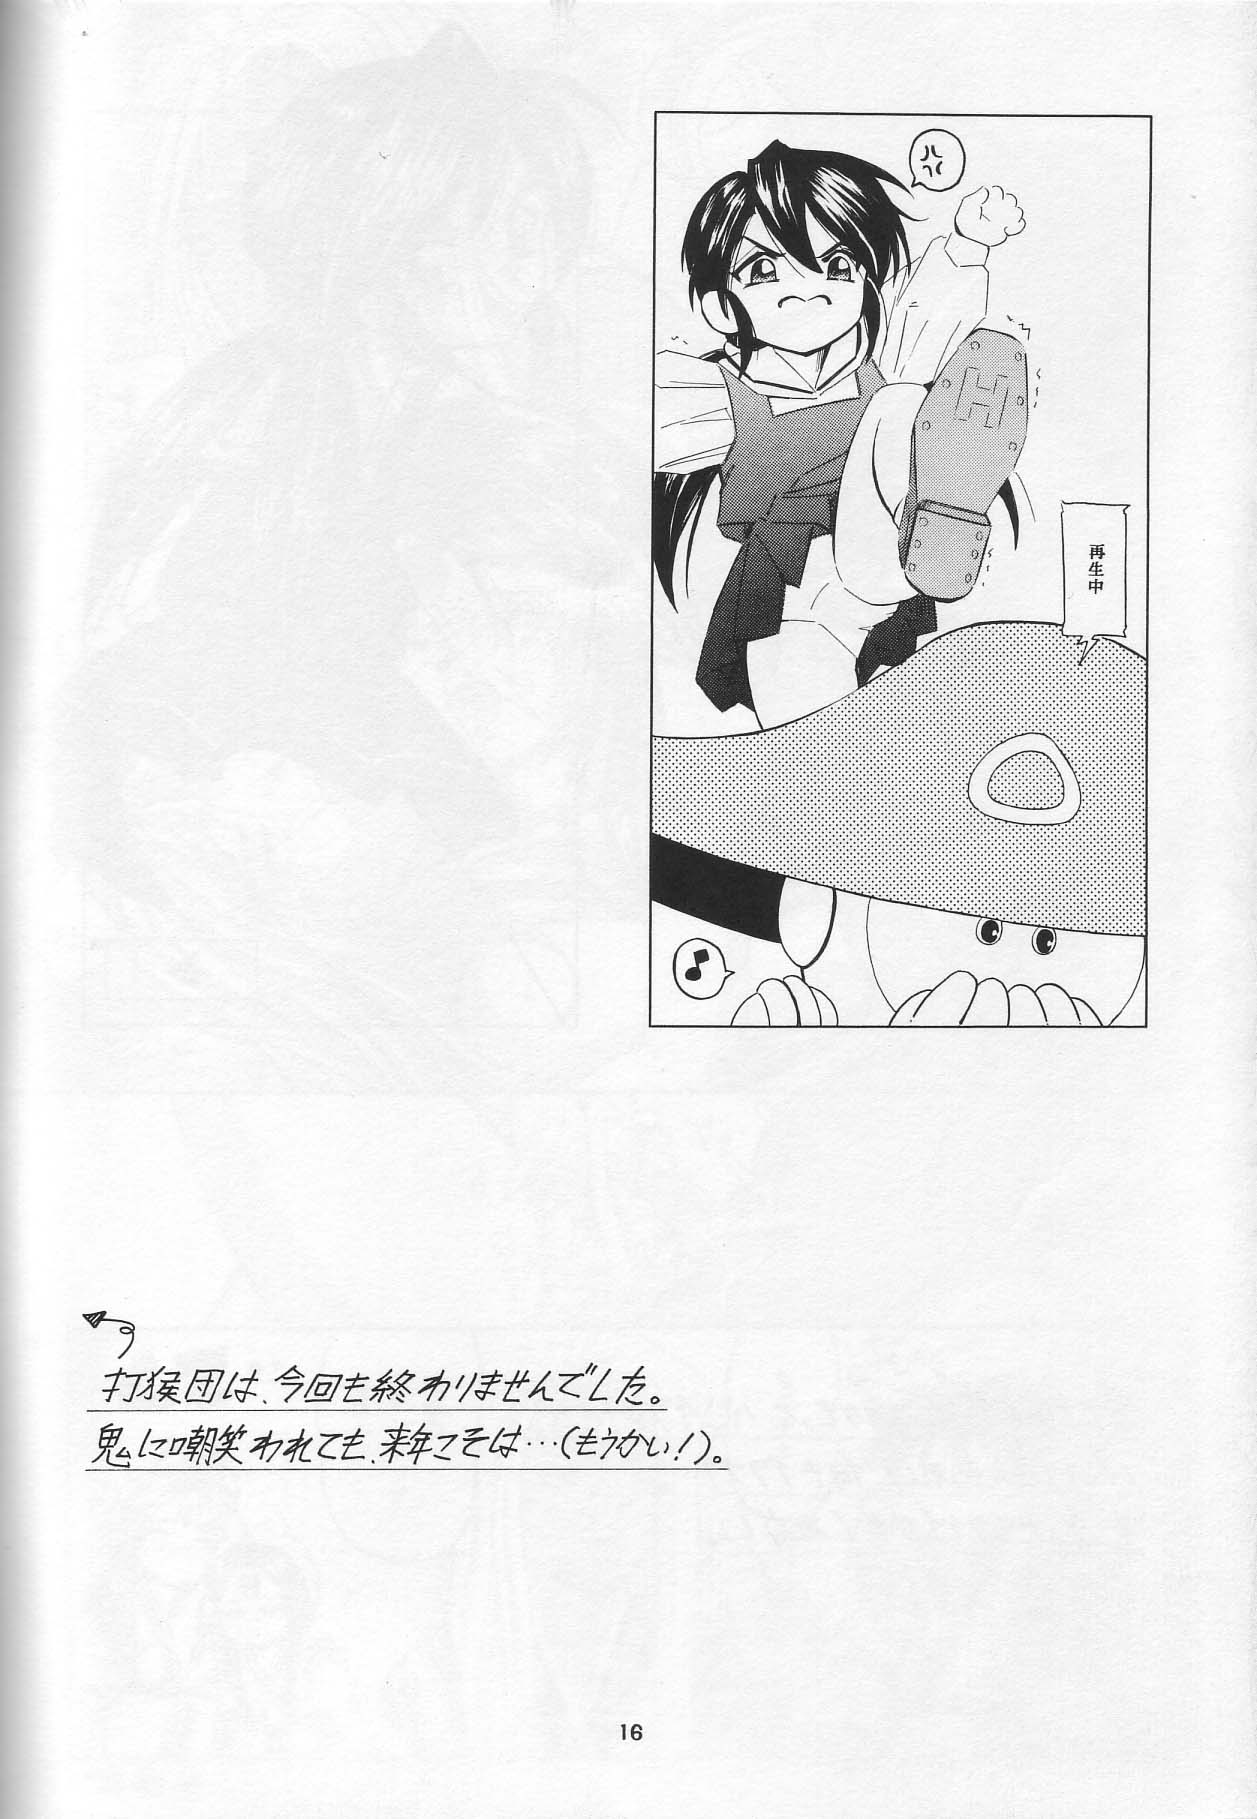 [Takitate] Than Para (Ah! Megami-sama/Ah! My Goddess) page 15 full